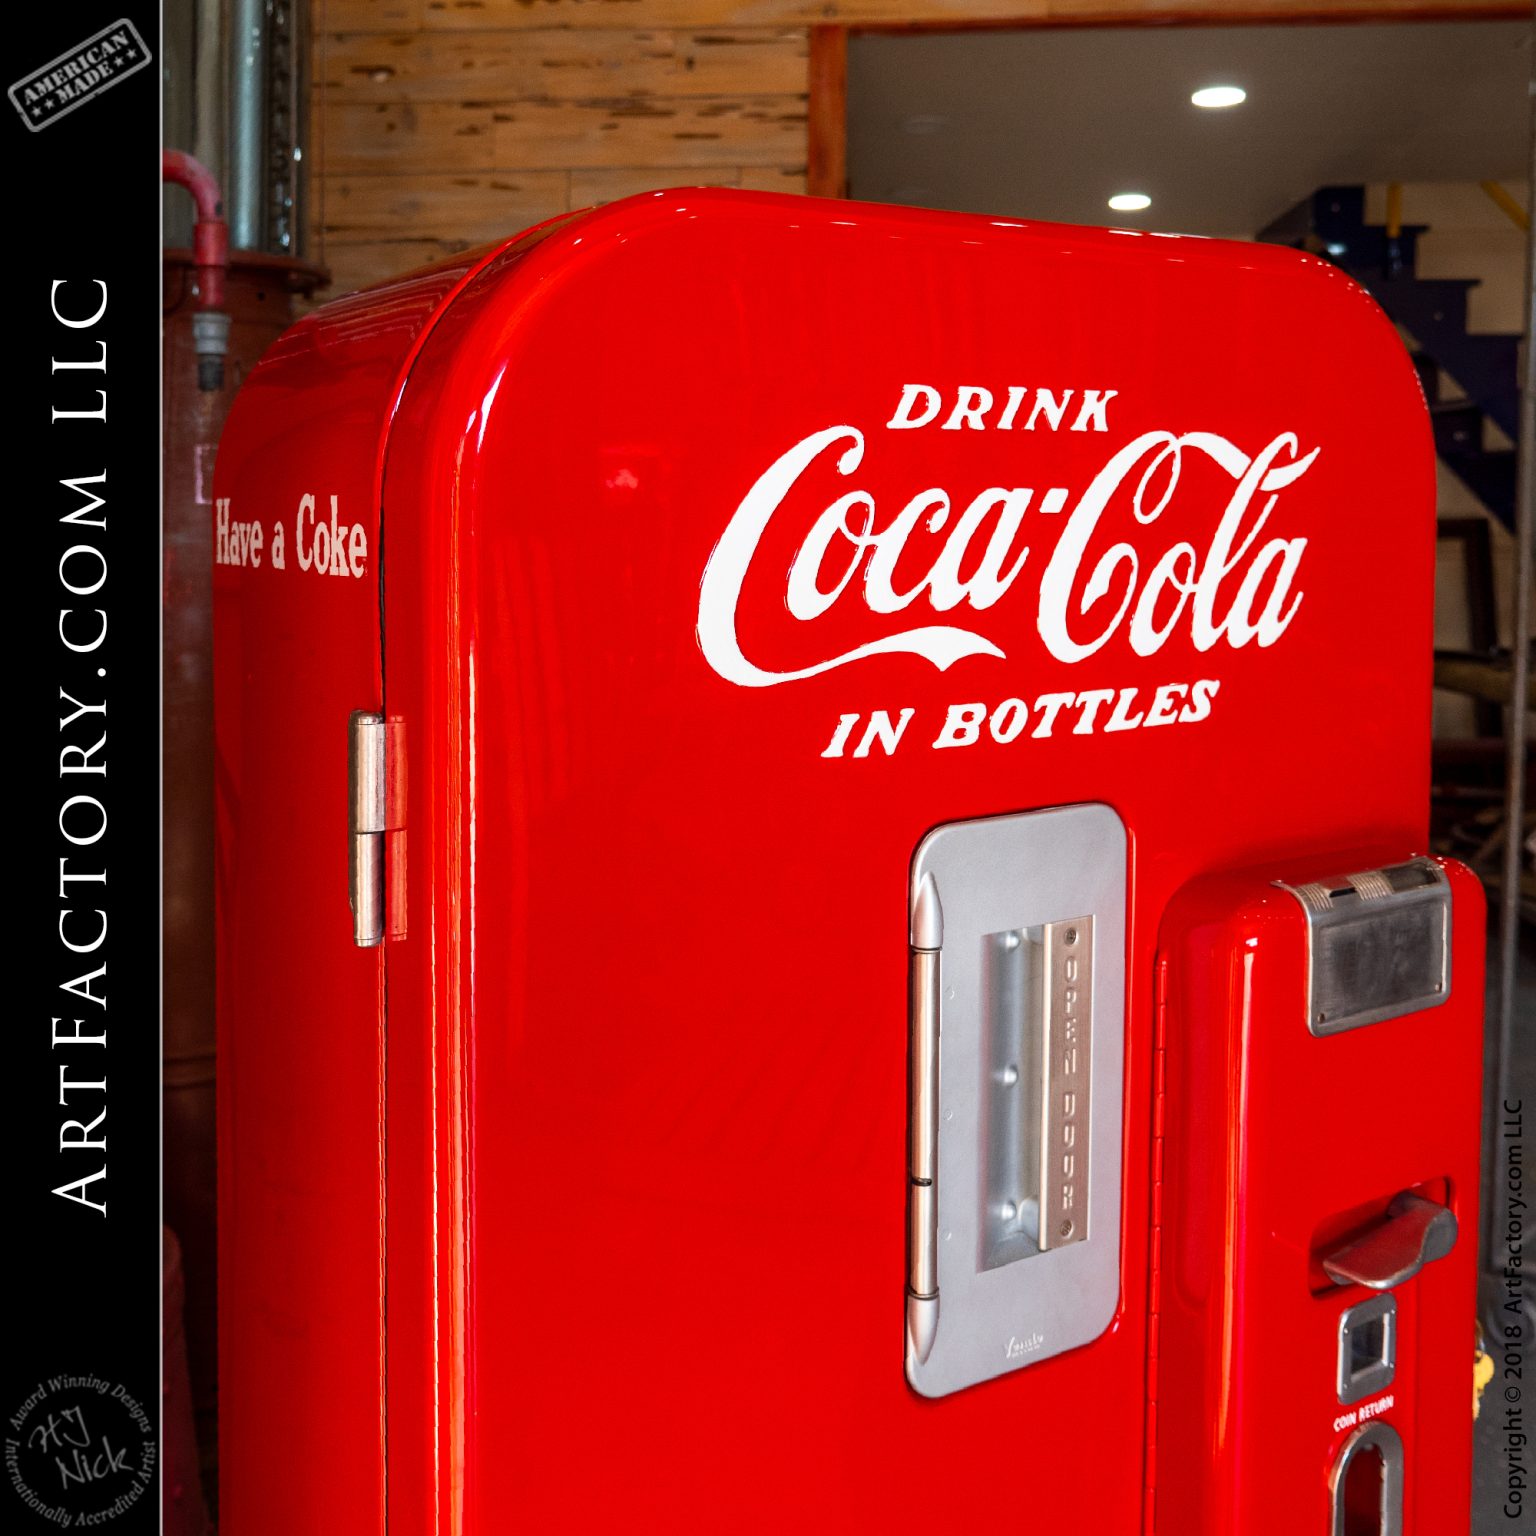 Restored Vendo 39 Coke Machine: Vintage Collectible Soda Vendor